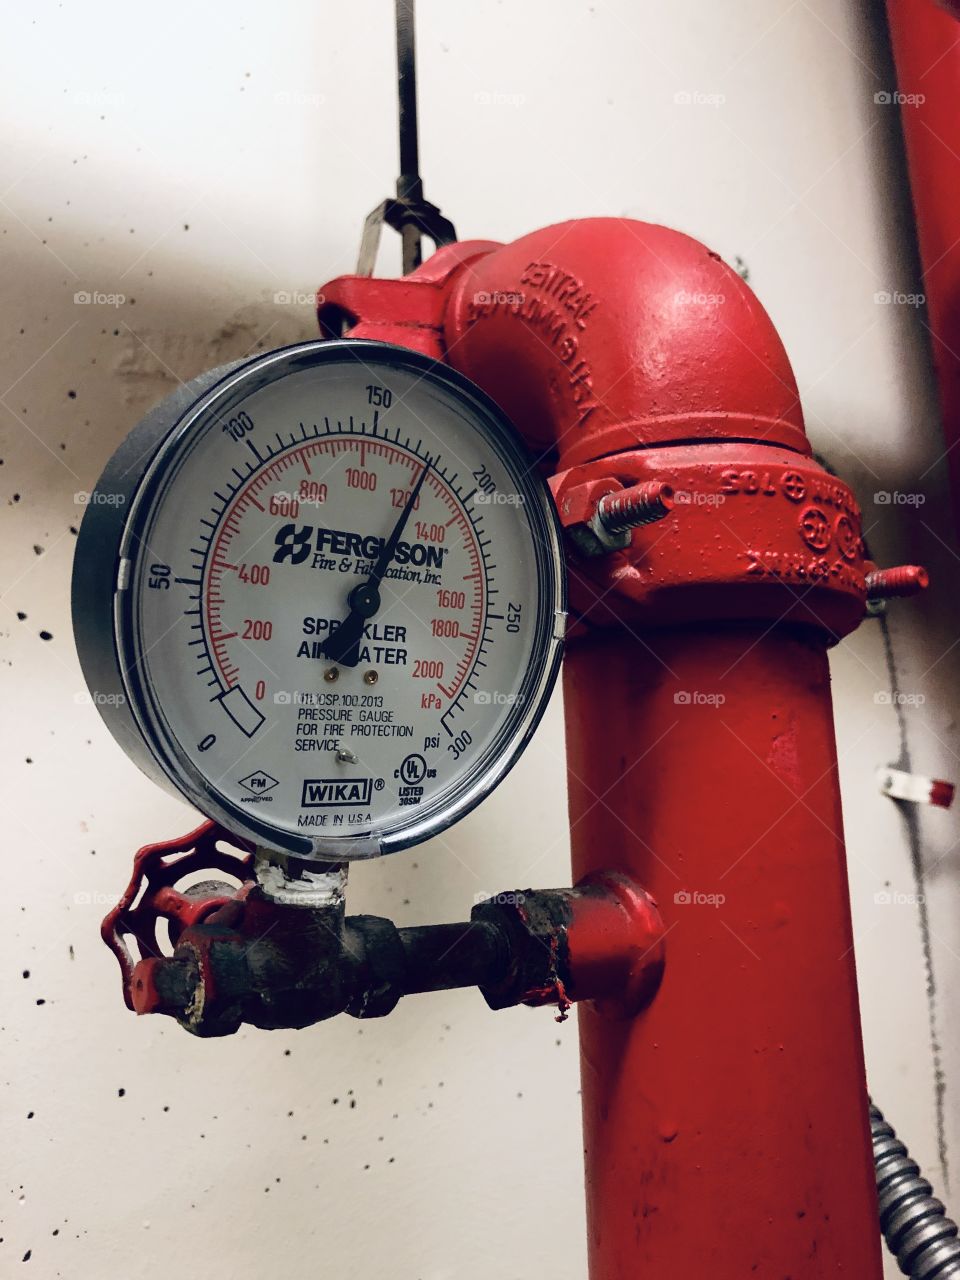 Sprinkler valve and pressure gauge